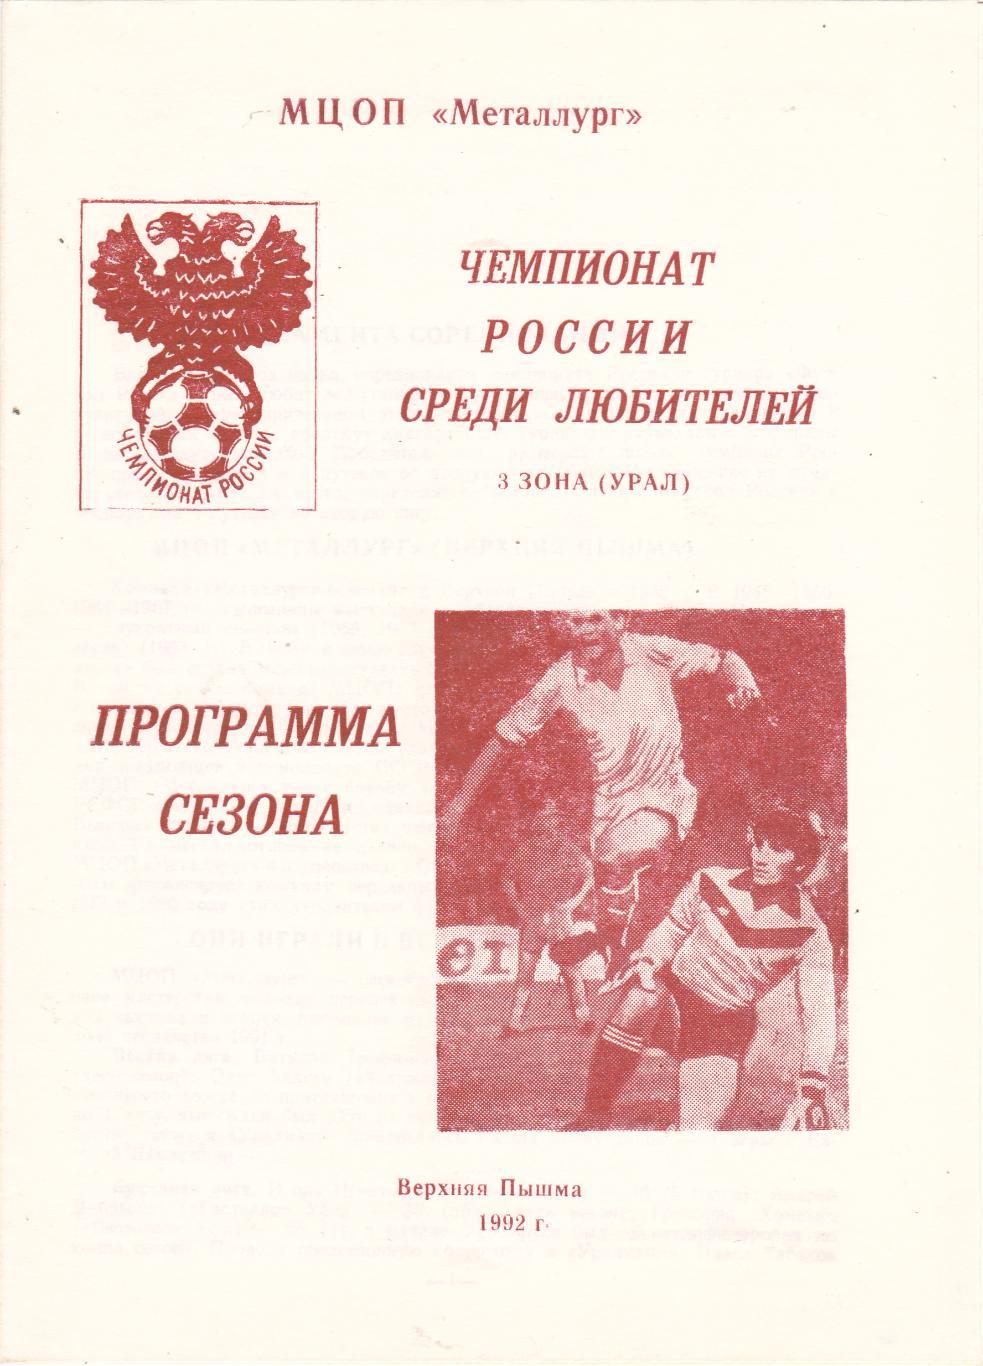 Пр-ма сезона Верхняя Пышма 1992